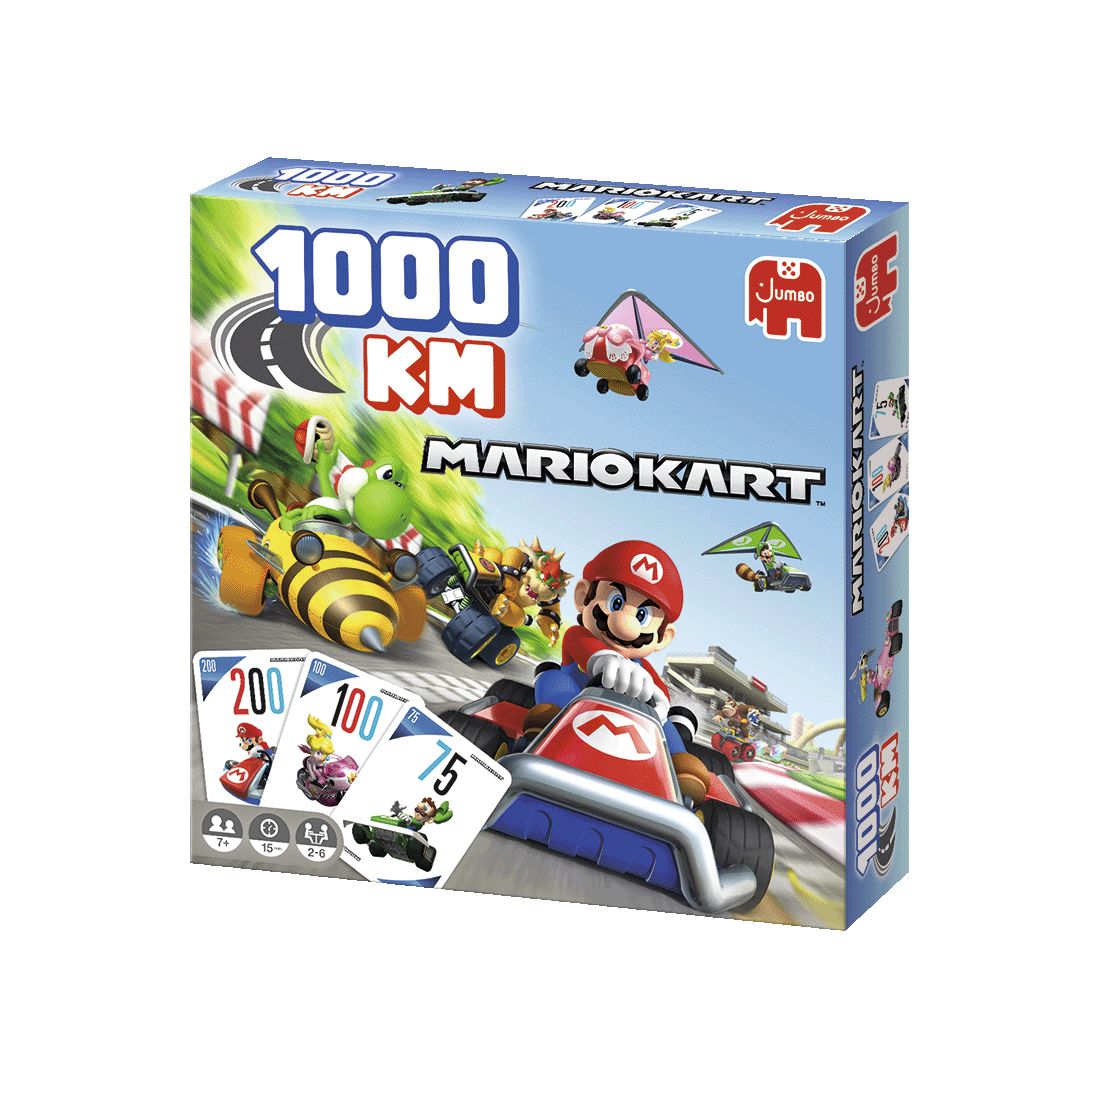 Jumbo 1000KM - Mario Kart